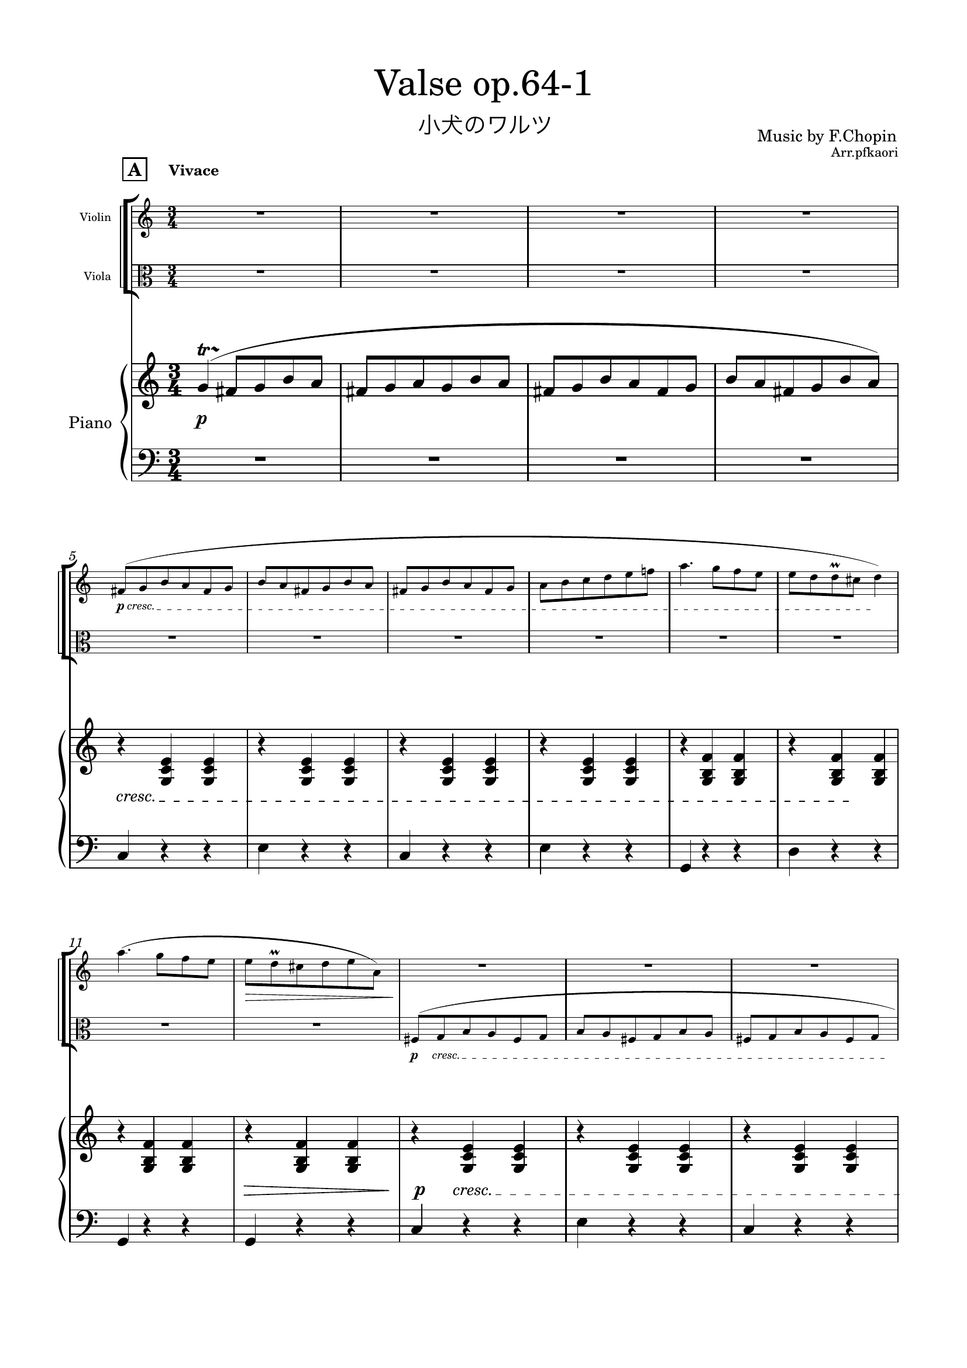 ショパン - 小犬のワルツ (1版/Cdur・ピアノトリオ/ヴァイオリン&ヴィオラ) by pfkaori